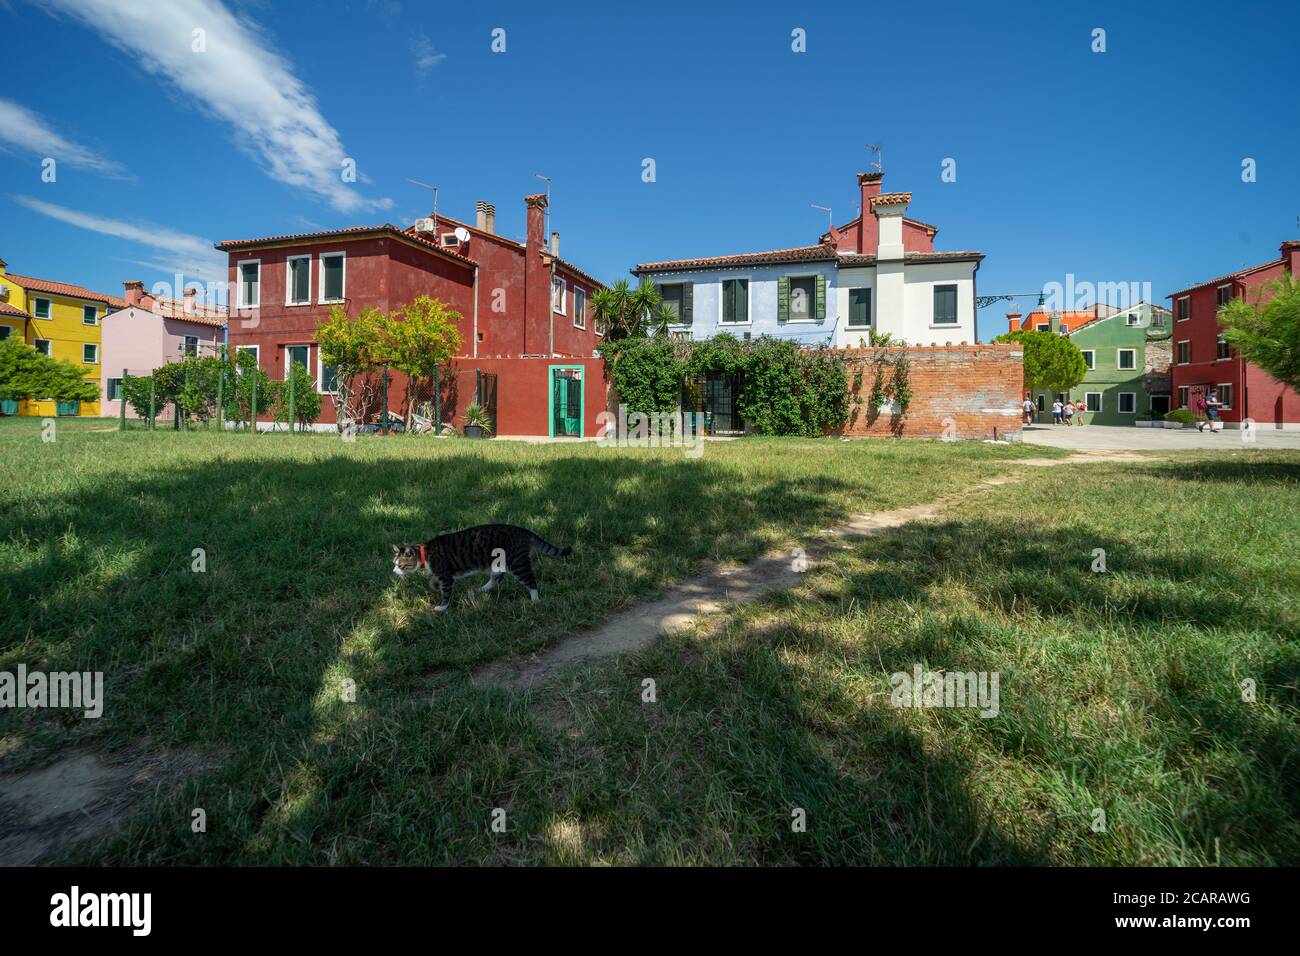 Isola di Burano, Laguna Veneziana, Venezia, Italia, panorama con le tipiche case di villaggio colorate e un gatto sul prato Foto Stock